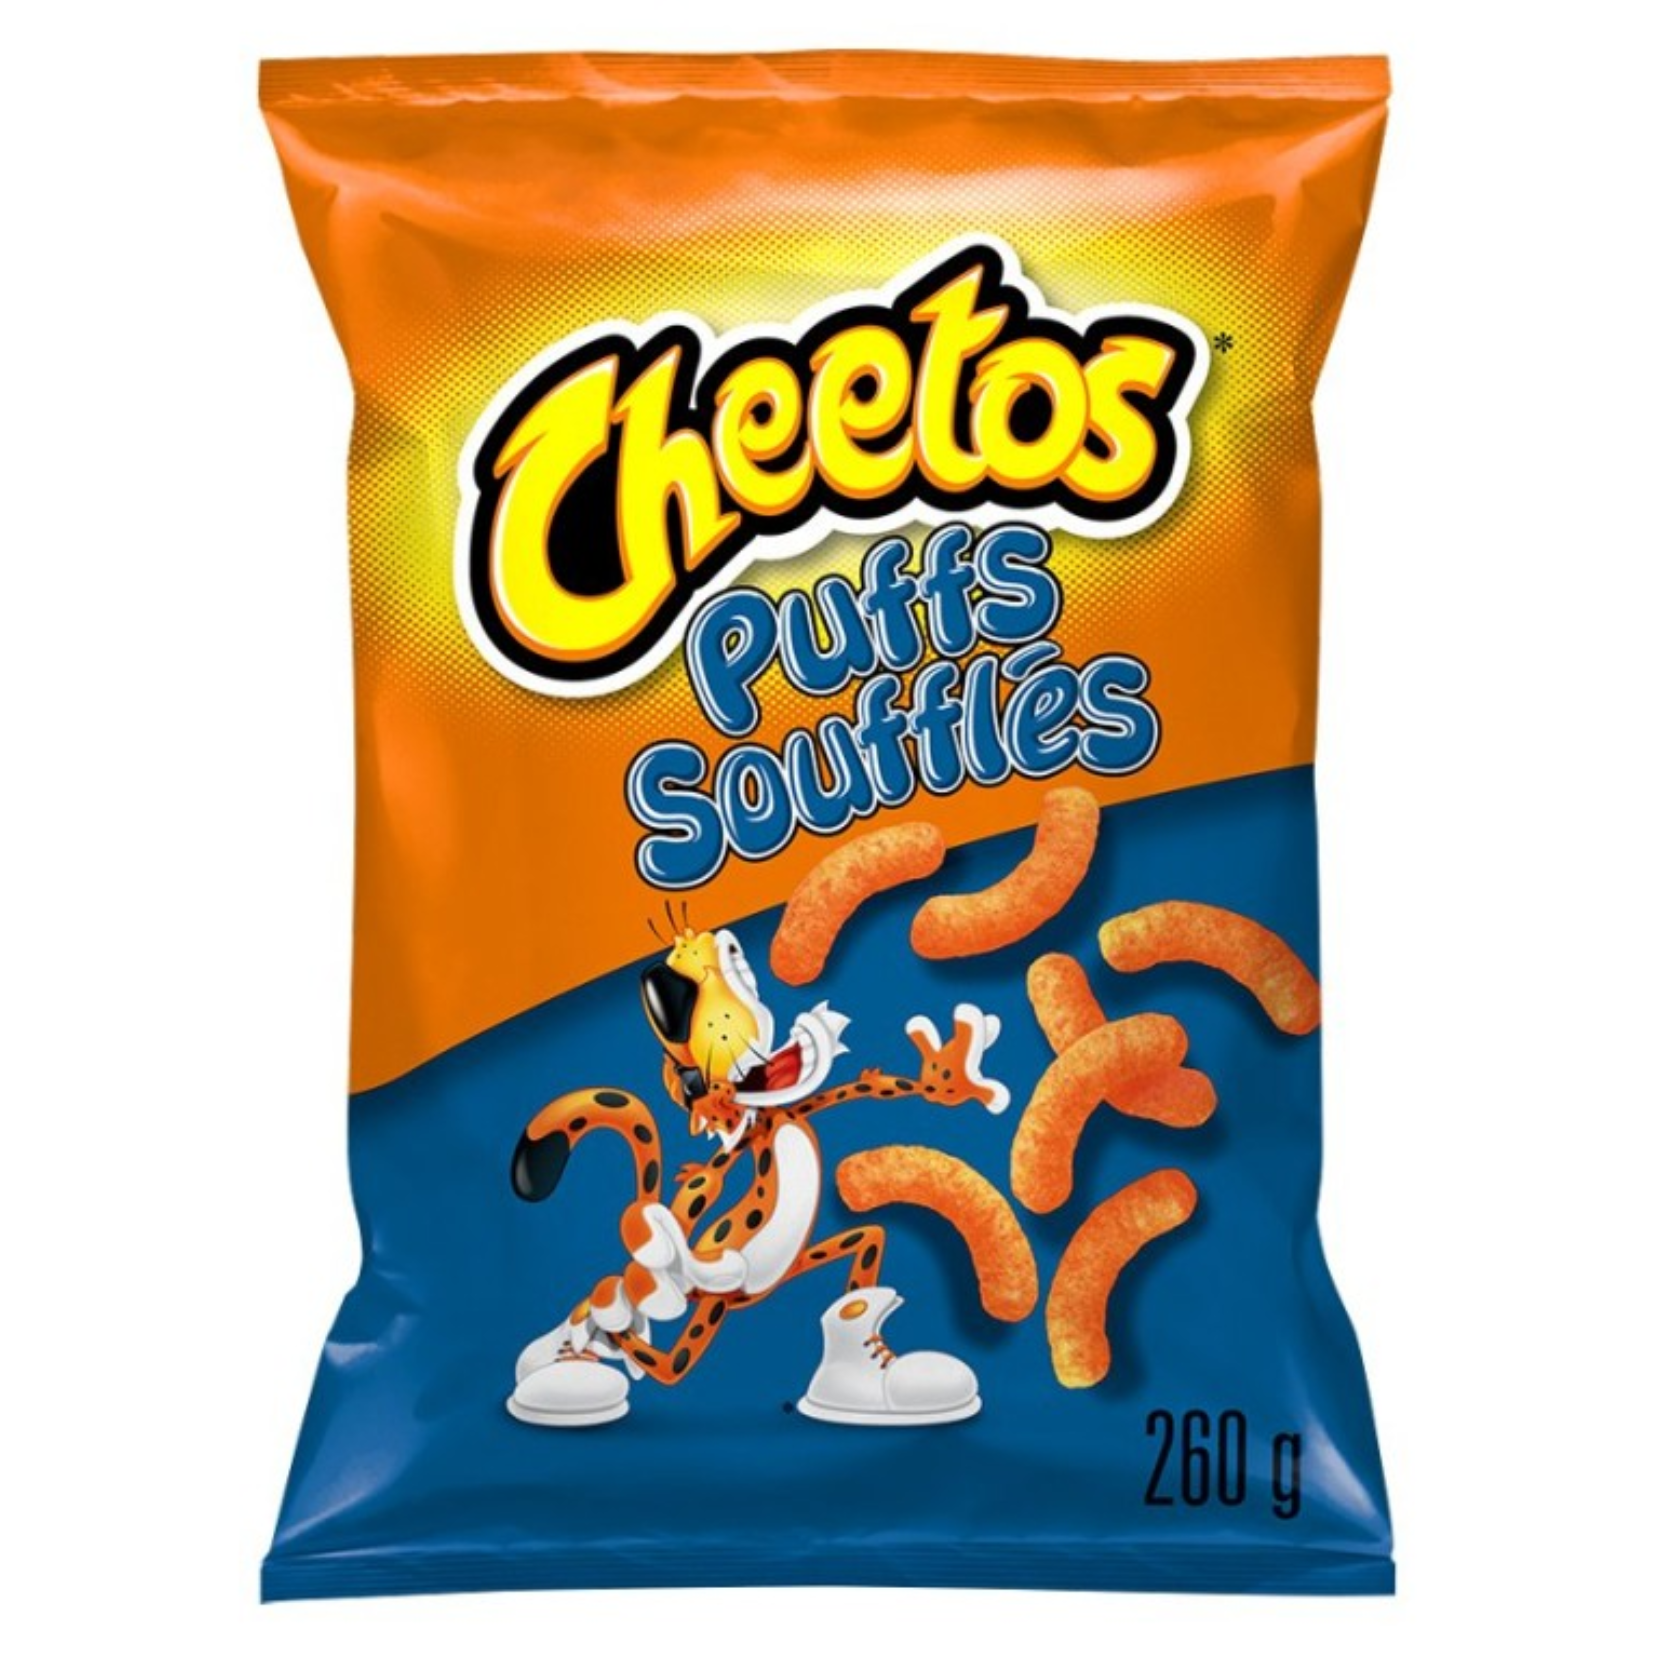 Cheetos Puffs Cheese Snack 260g